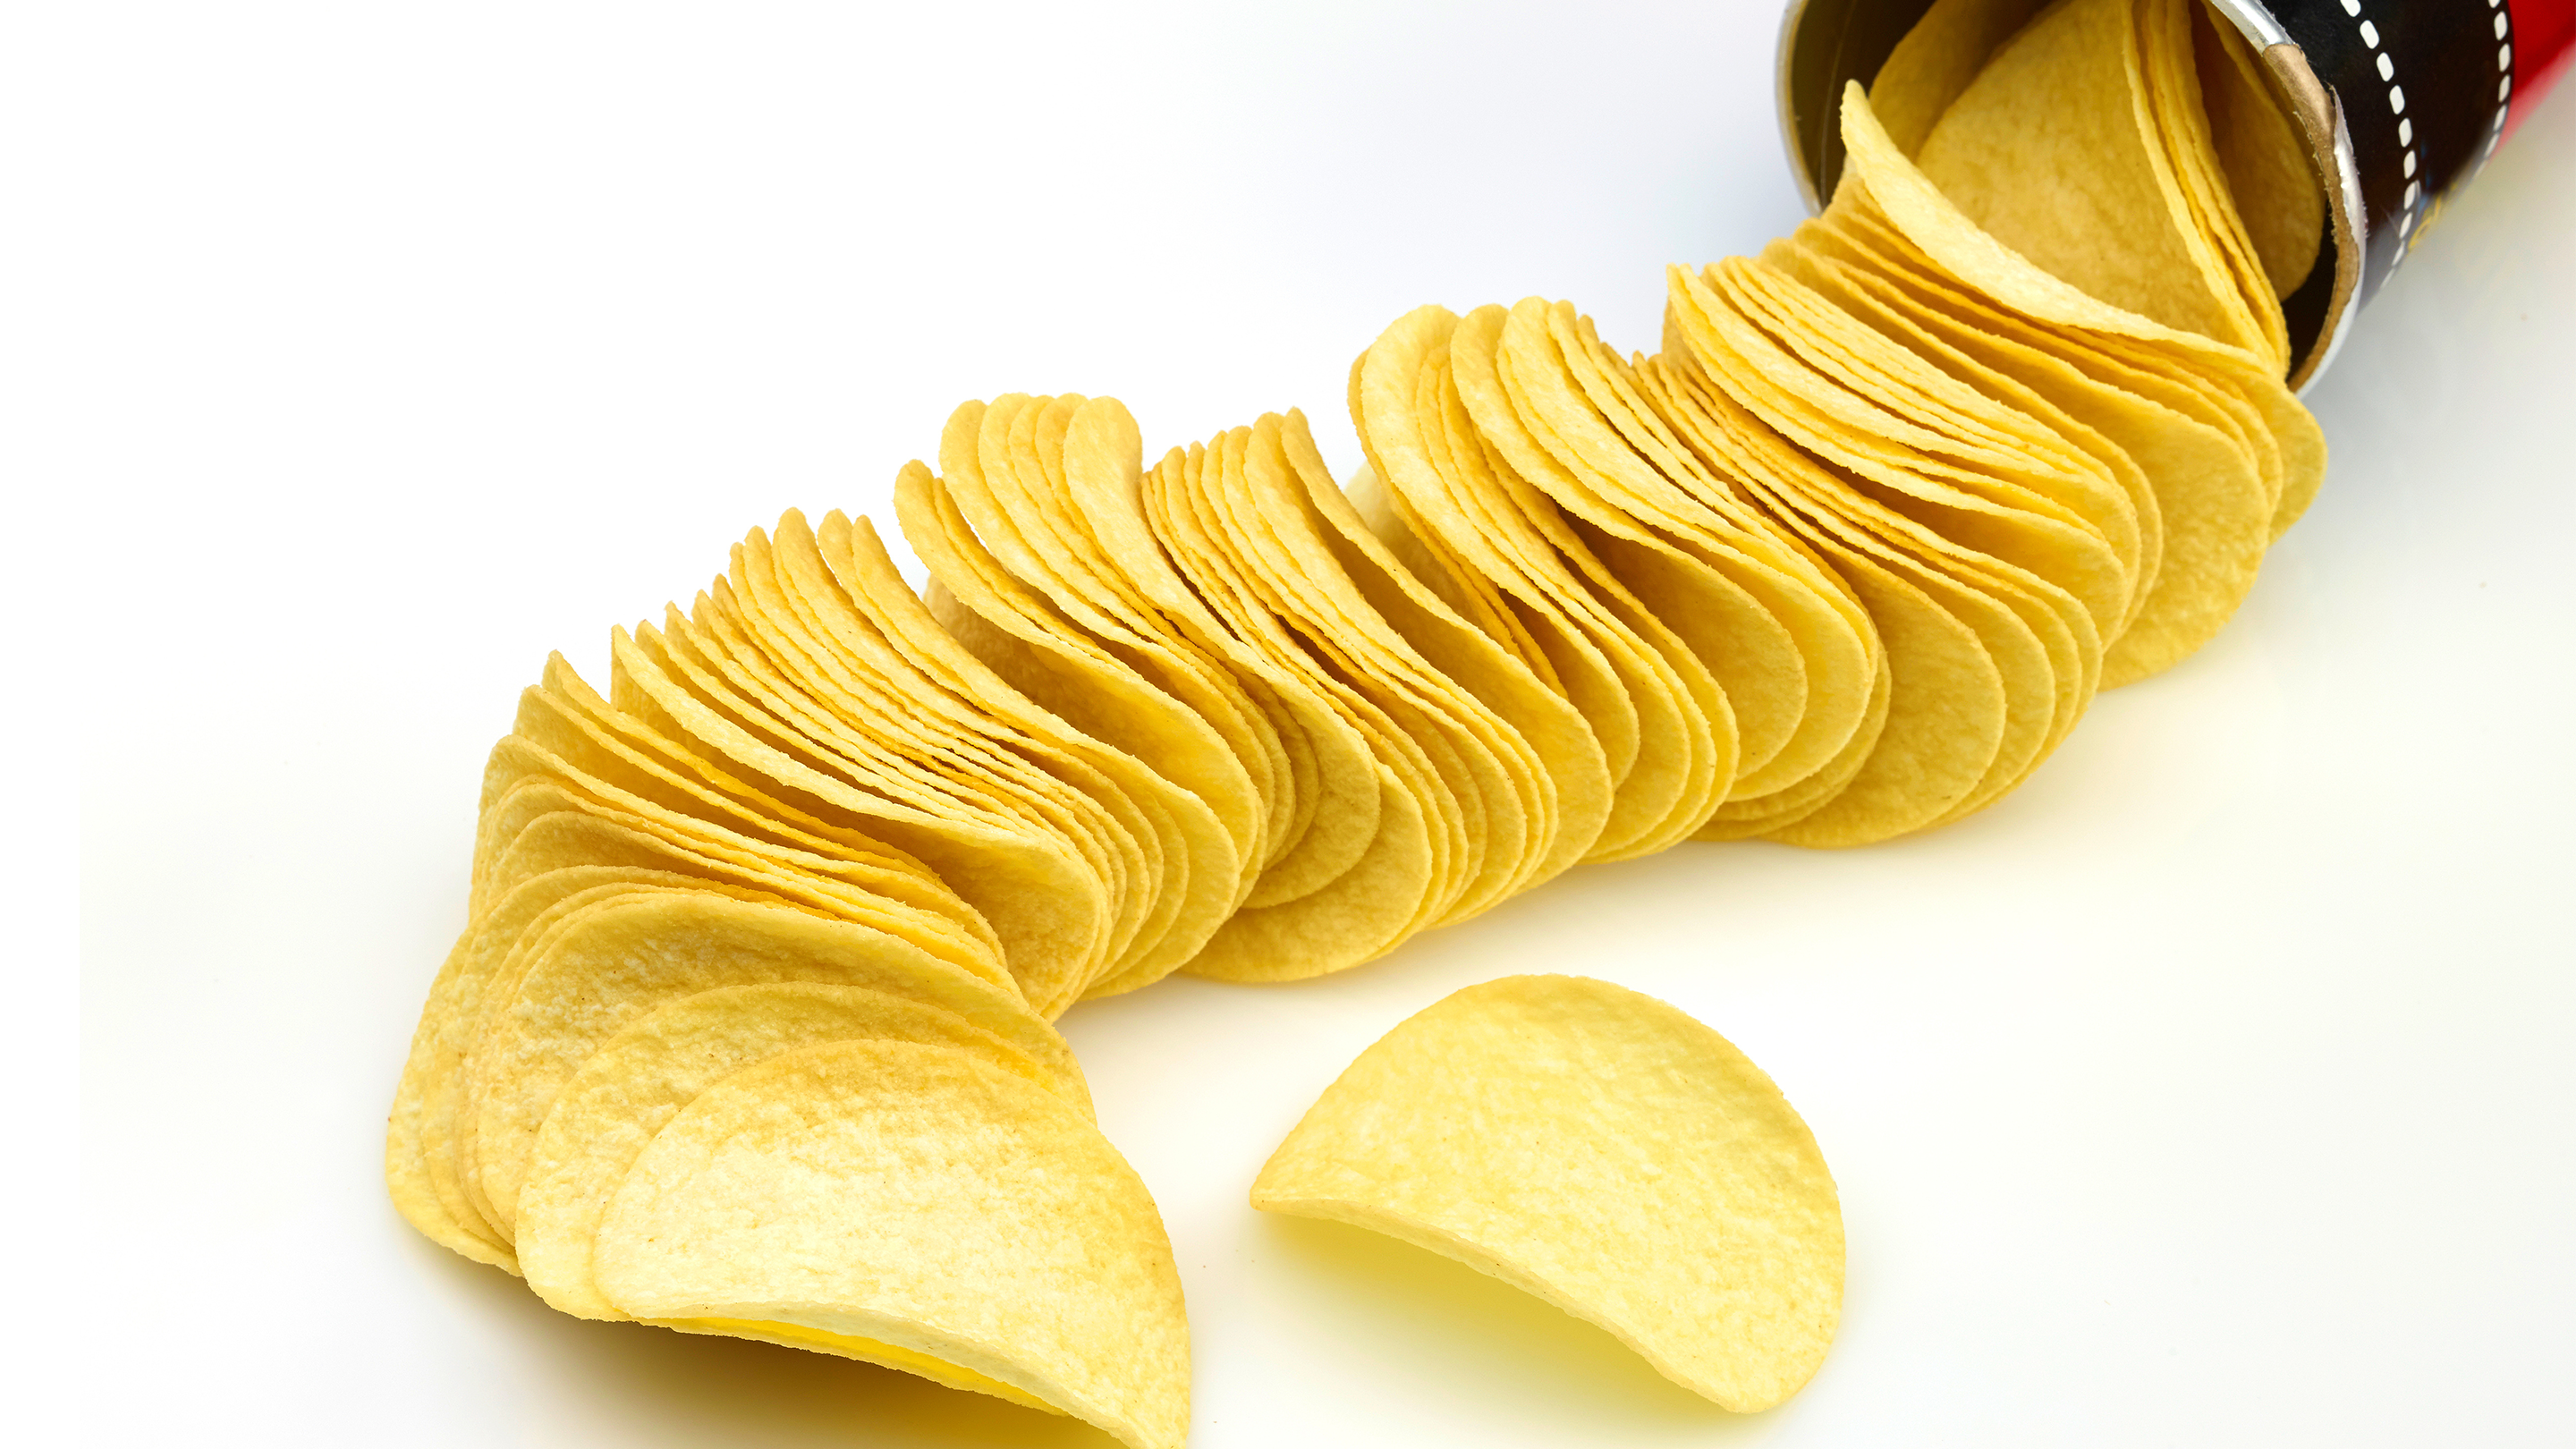 Pringles crisps